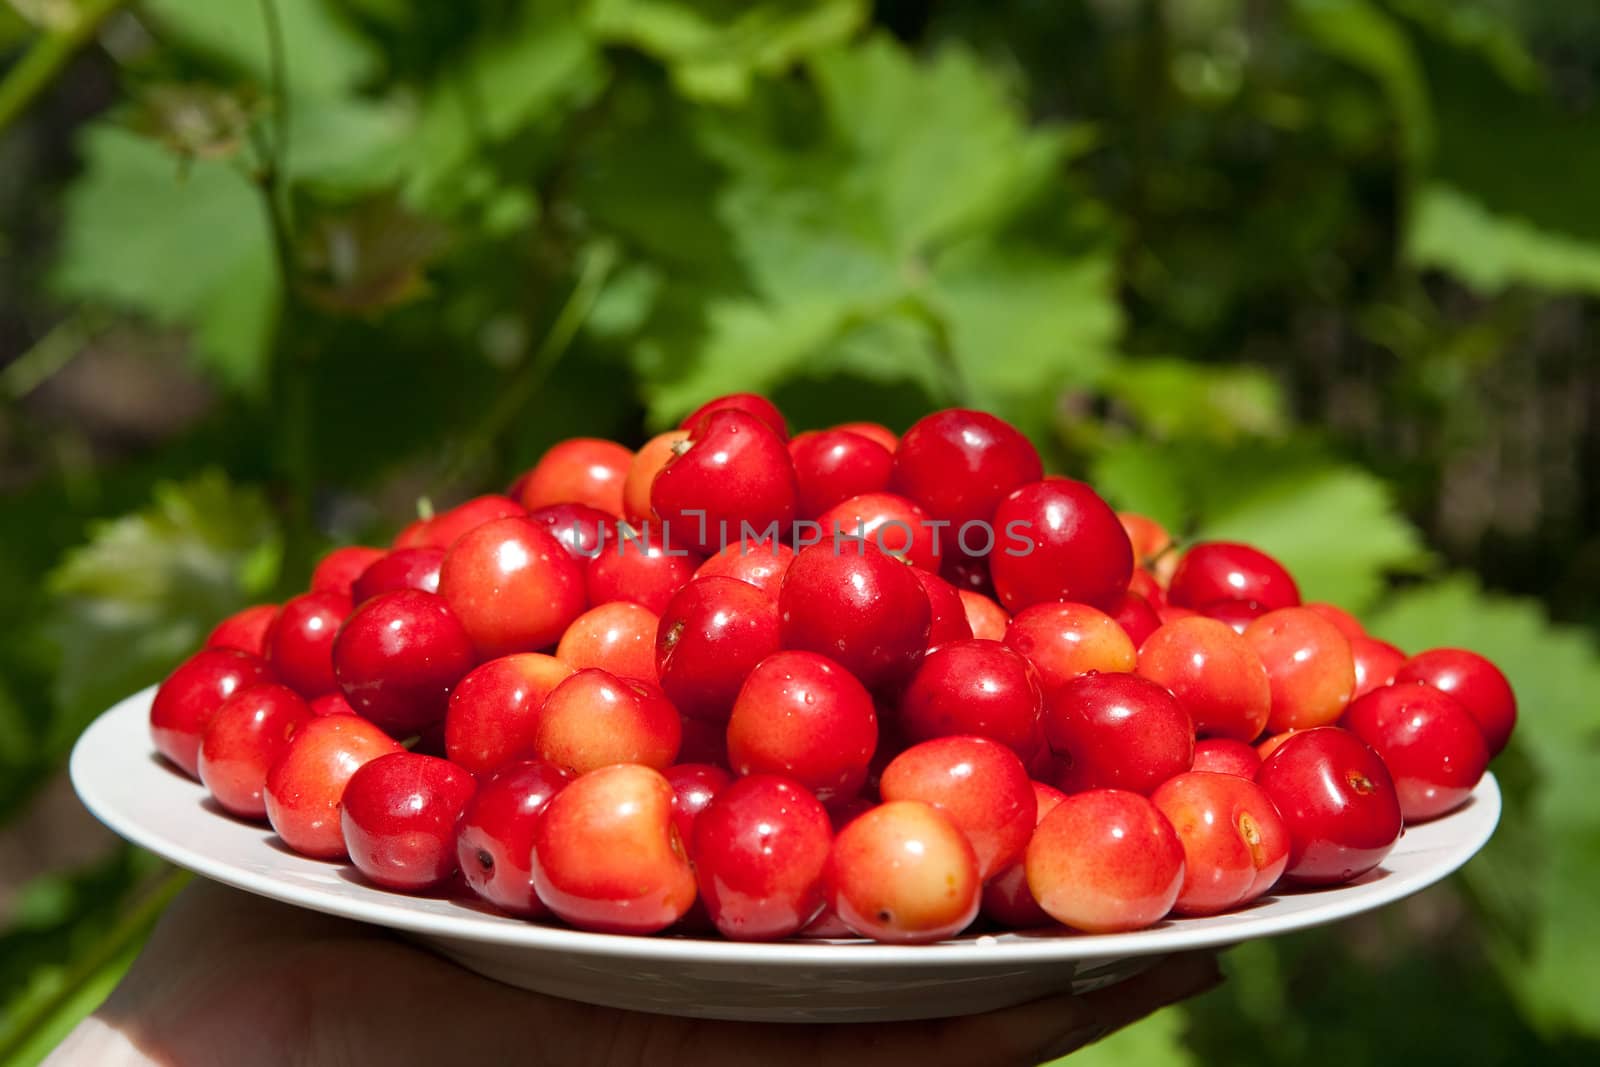 tasty cherries by vsurkov